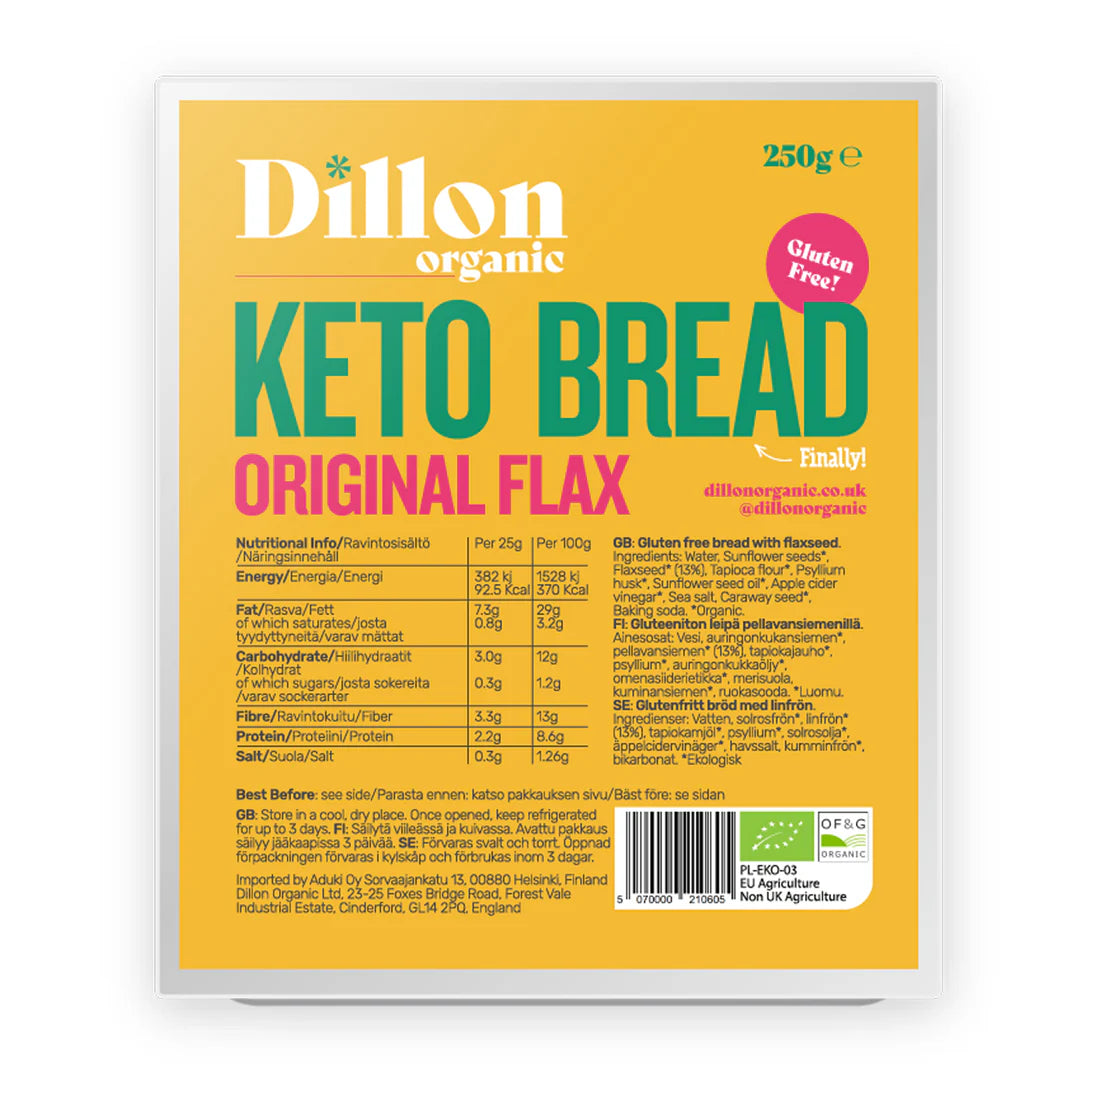 Dillon Organic Original Flax Keto Bread -250g